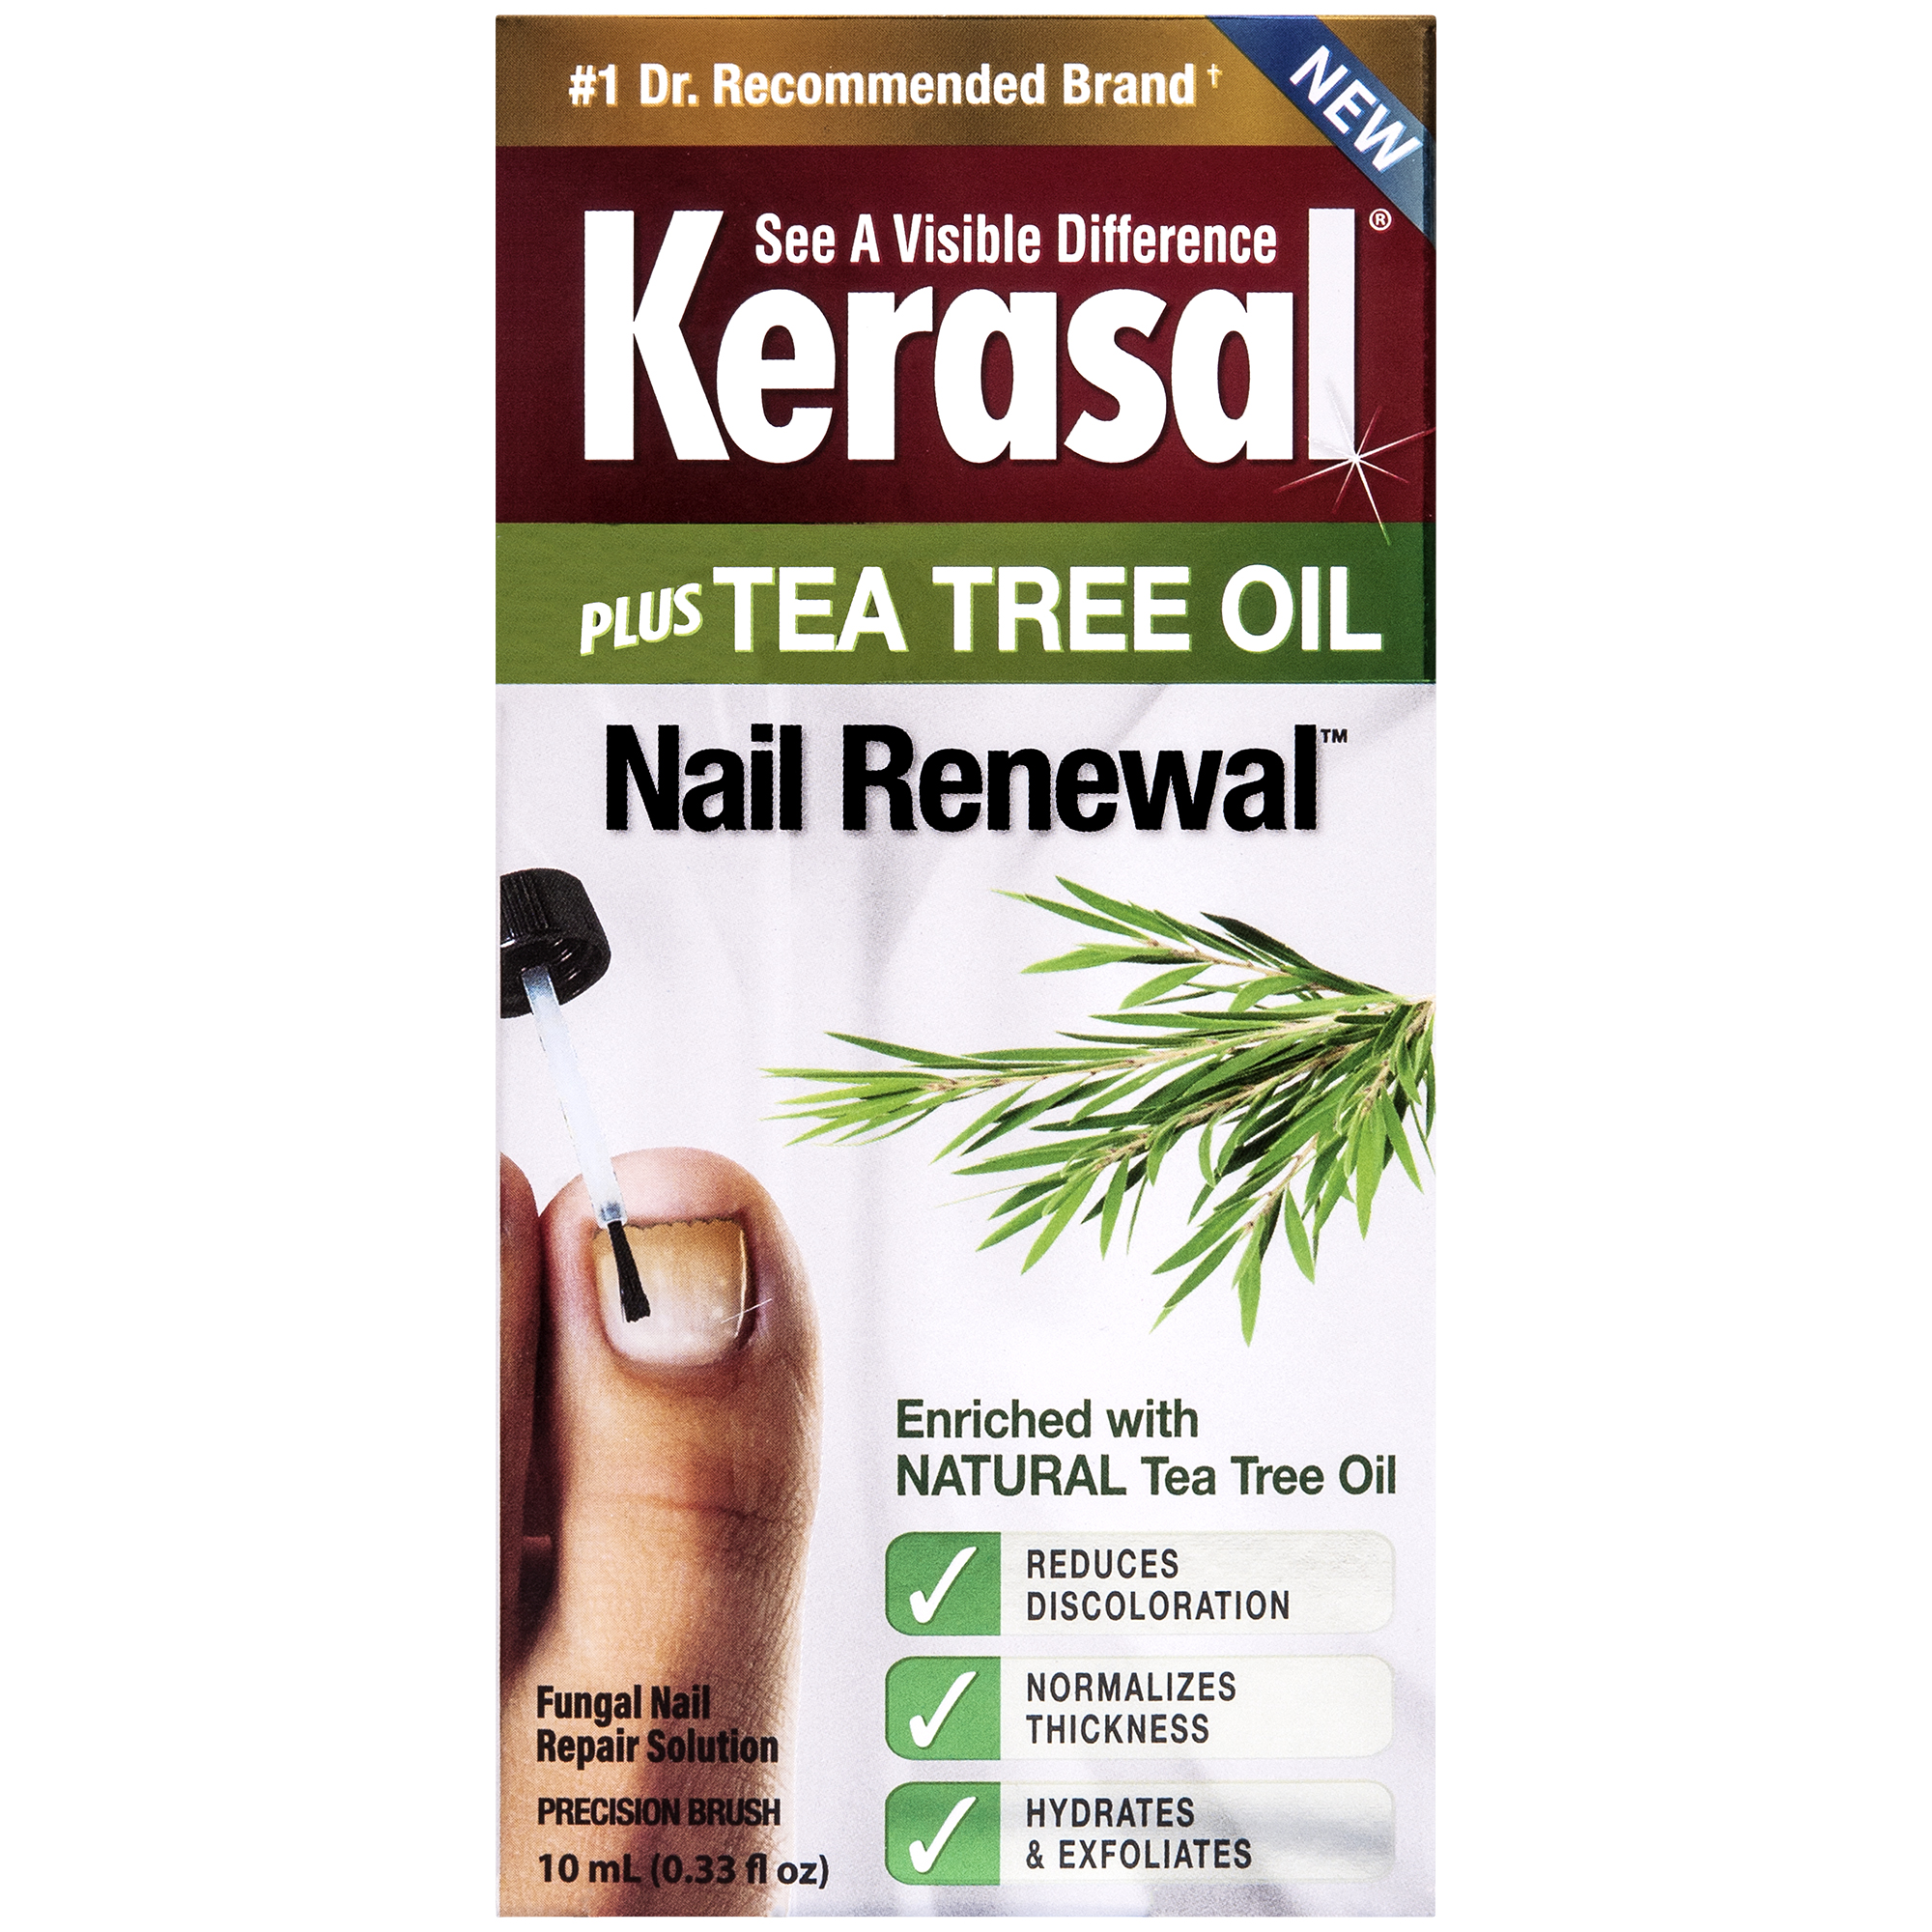 Kerasal Plus Tea Tree Oil Nail Renewal Fungal Nail Repair Solution ...